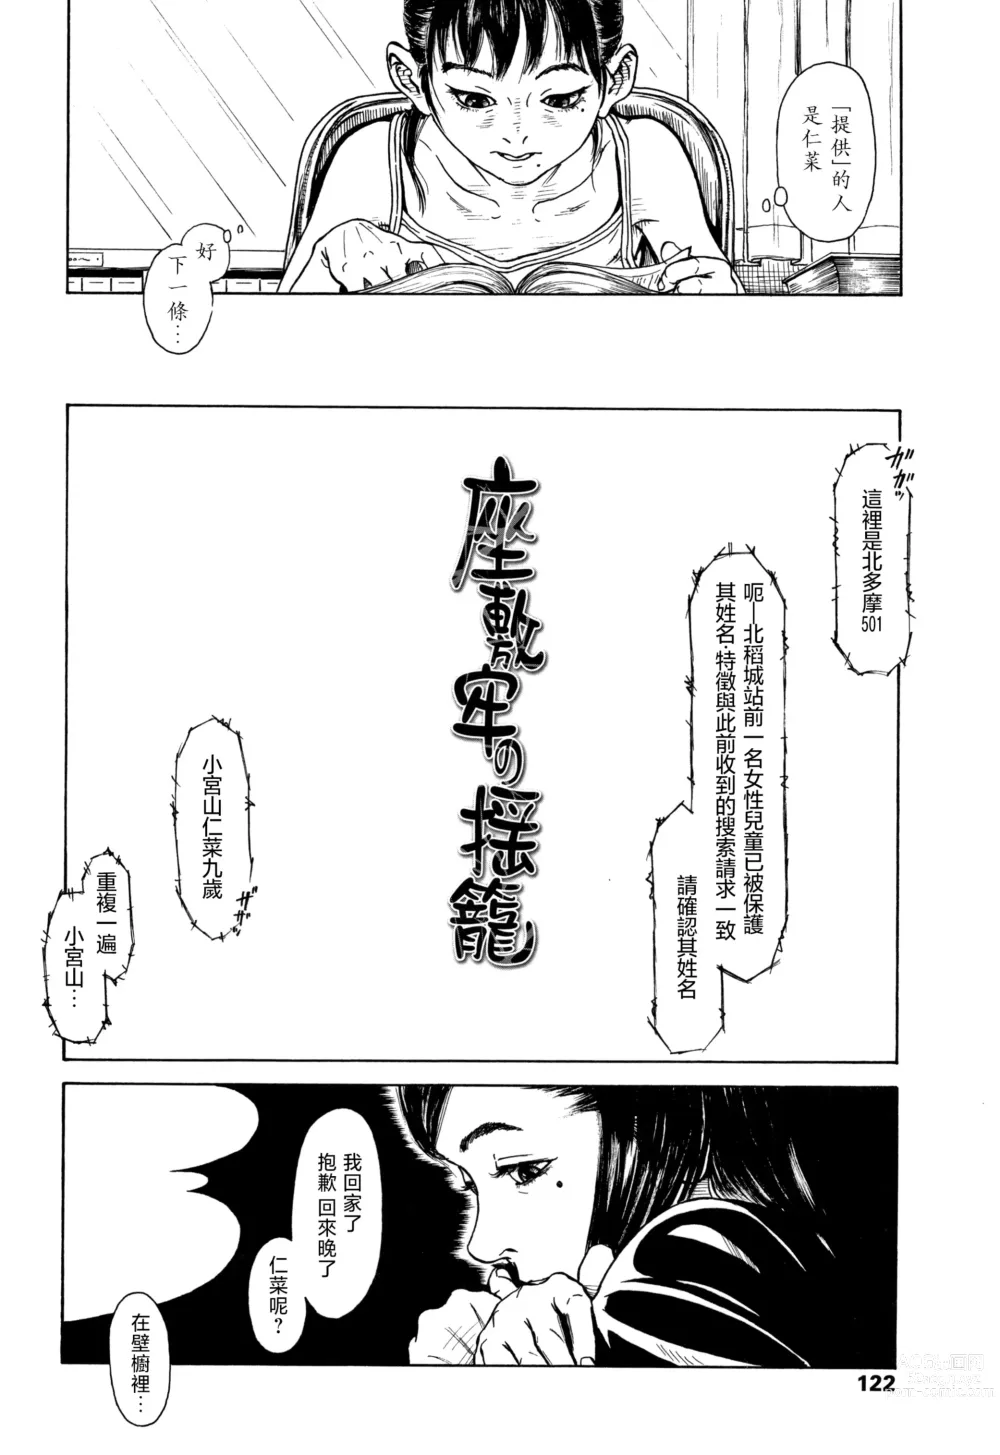 Page 4 of manga Zasikirou no Yurikago